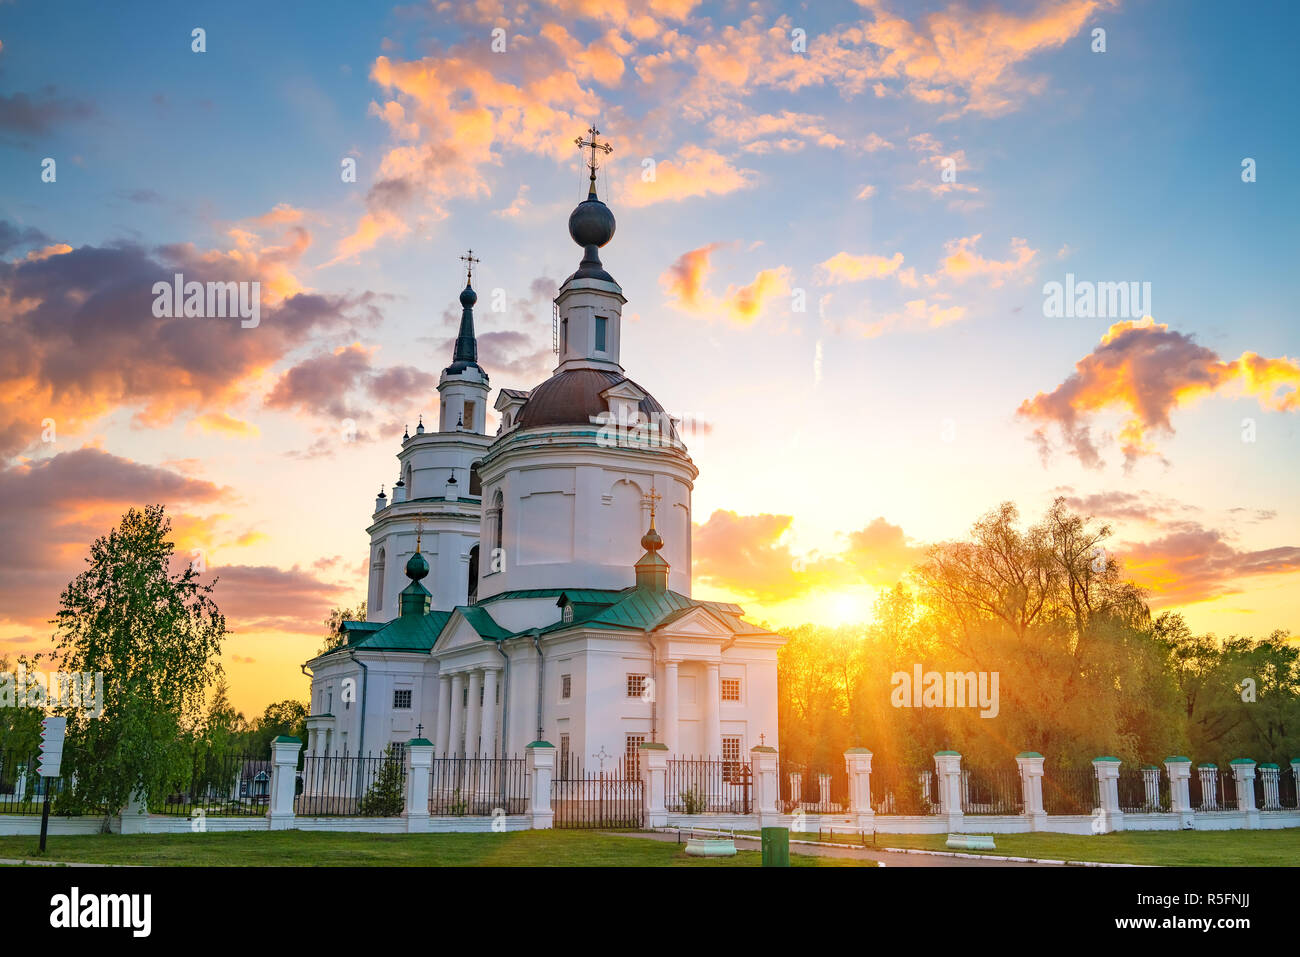 Orthodox church at sunset Stock Photo